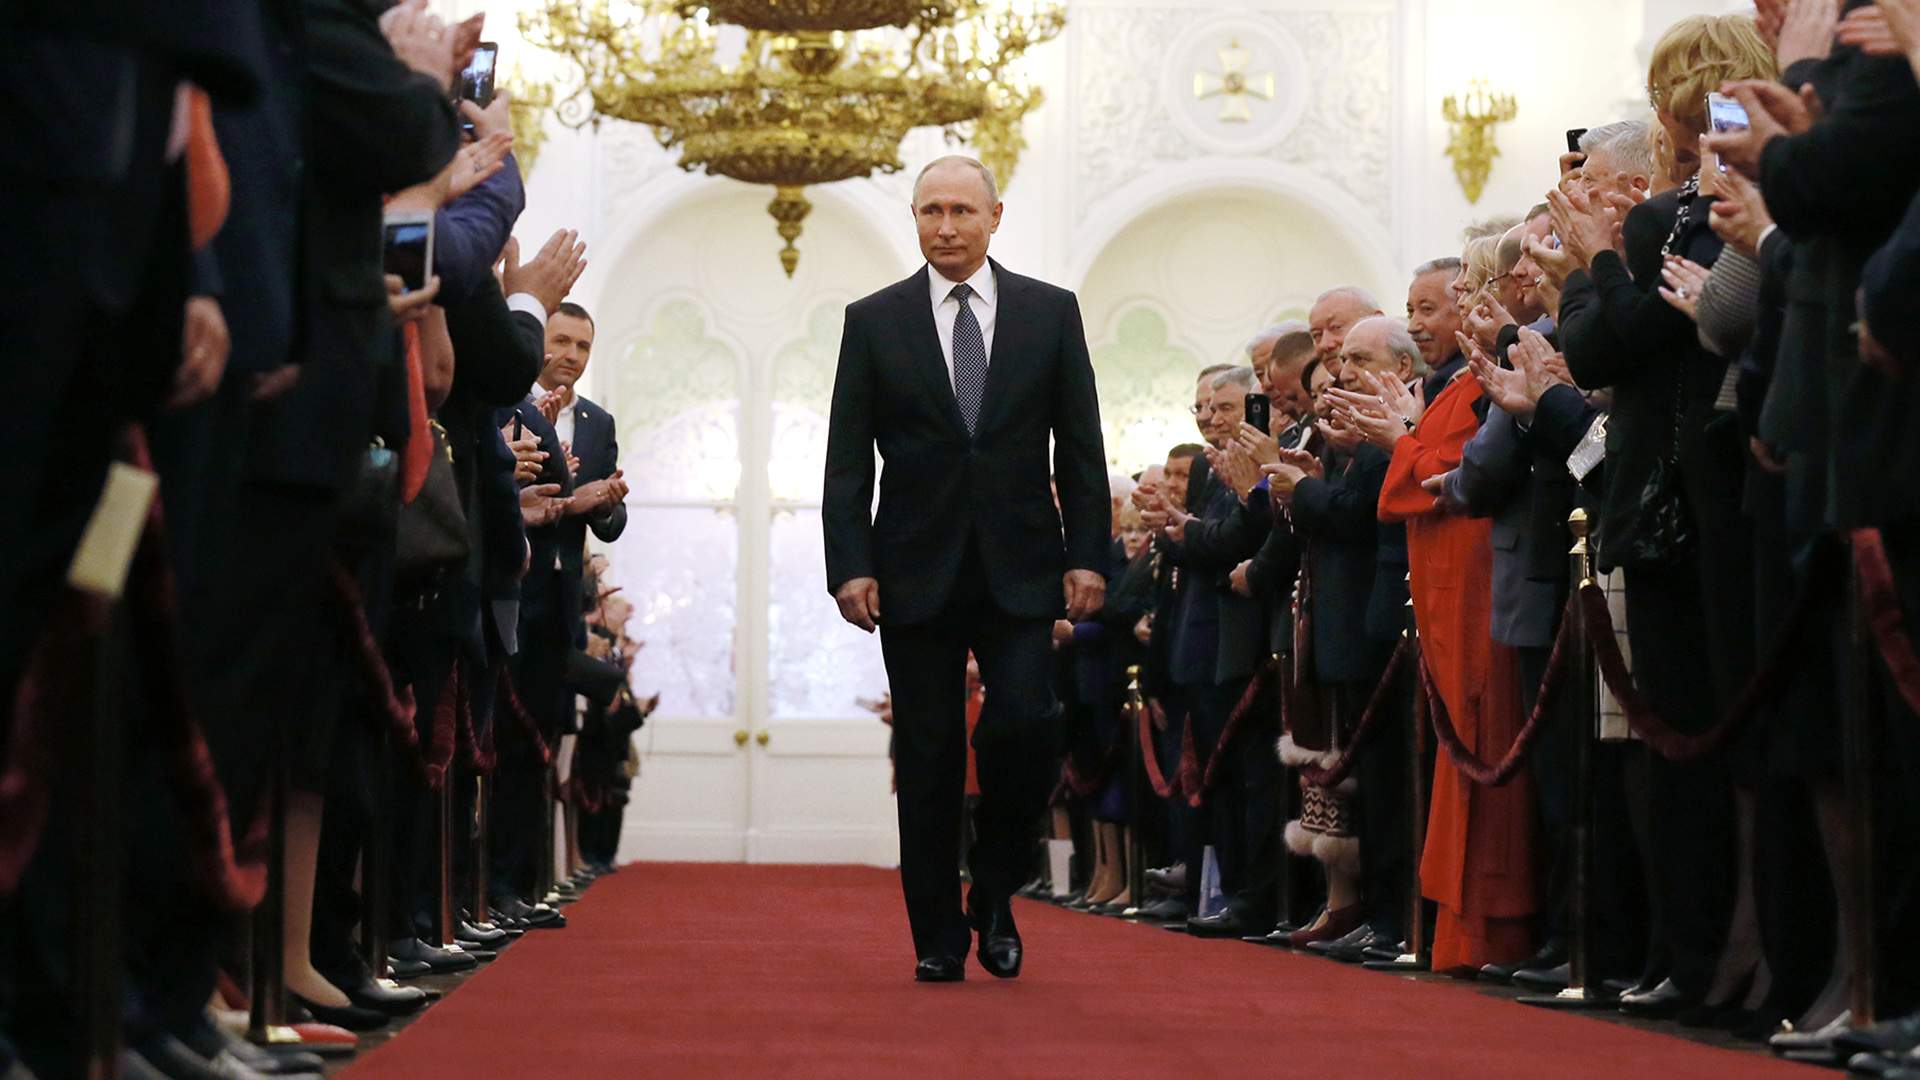 Hrozba pre demokratické národy – Putinova inaugurácia